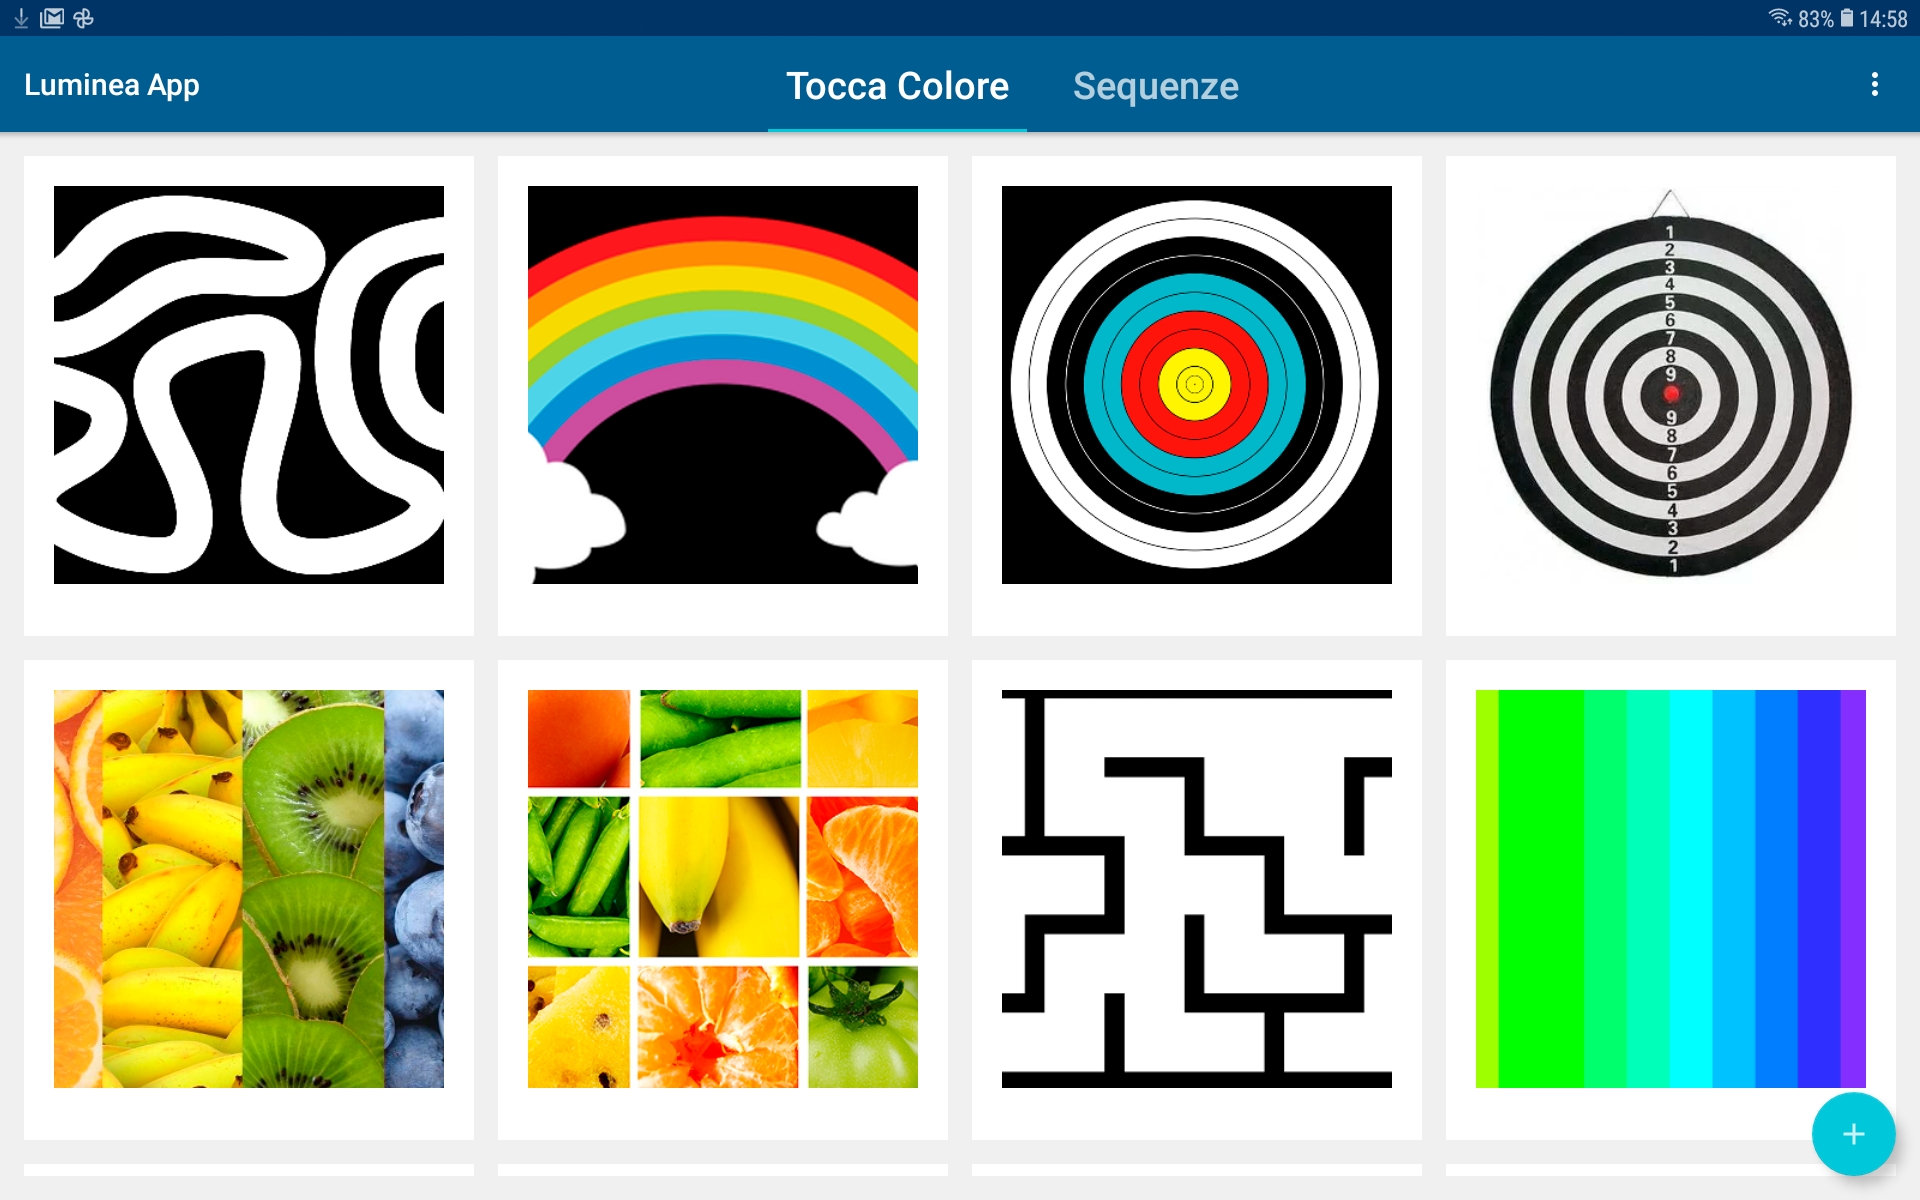 Schermata in italiano della app Luminea che mostra le due possibilità Tocca Colore e Sequenza